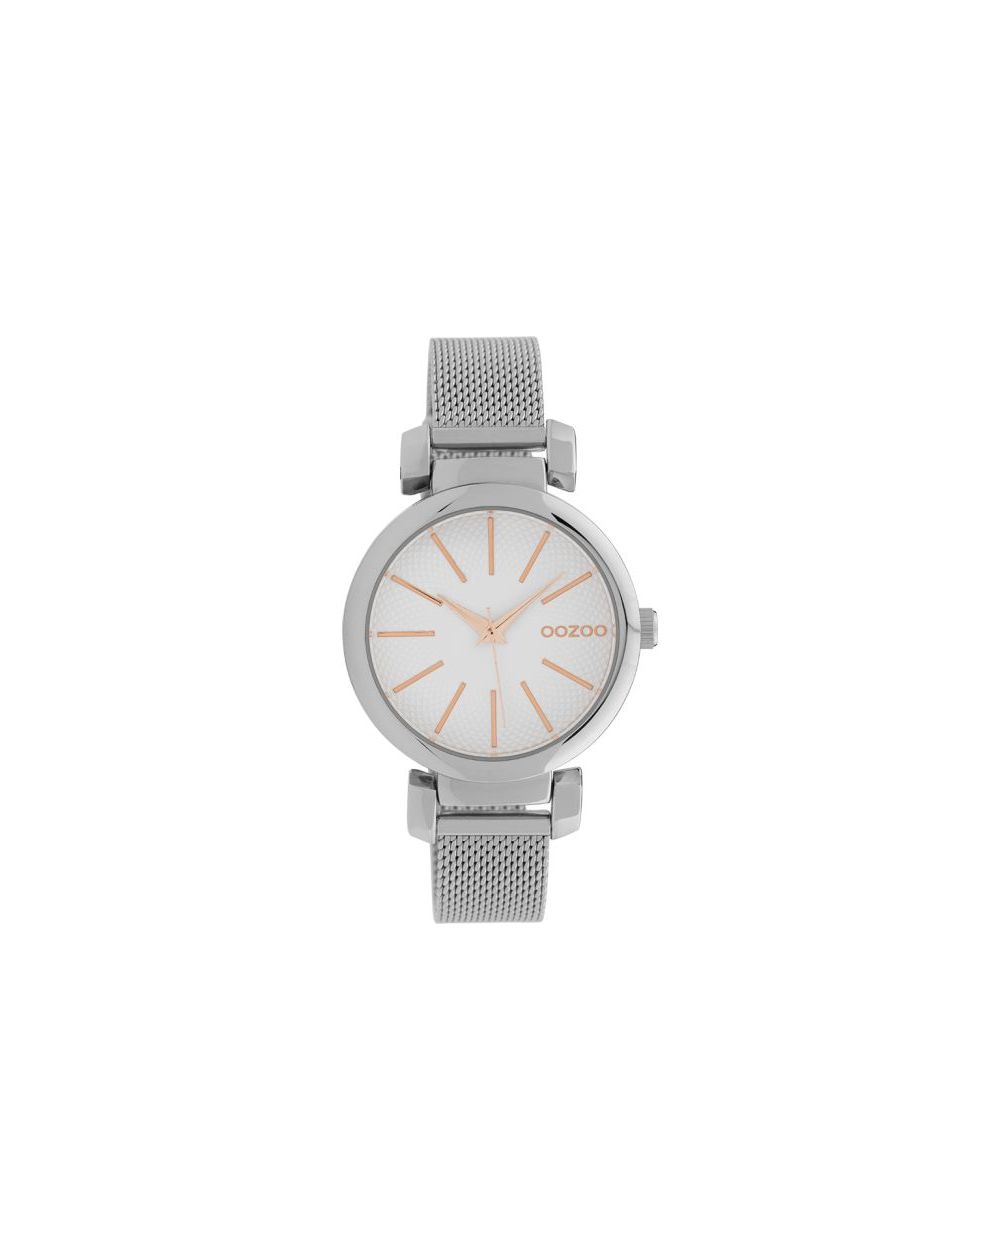 Oozoo montre/watch/horloge C10128